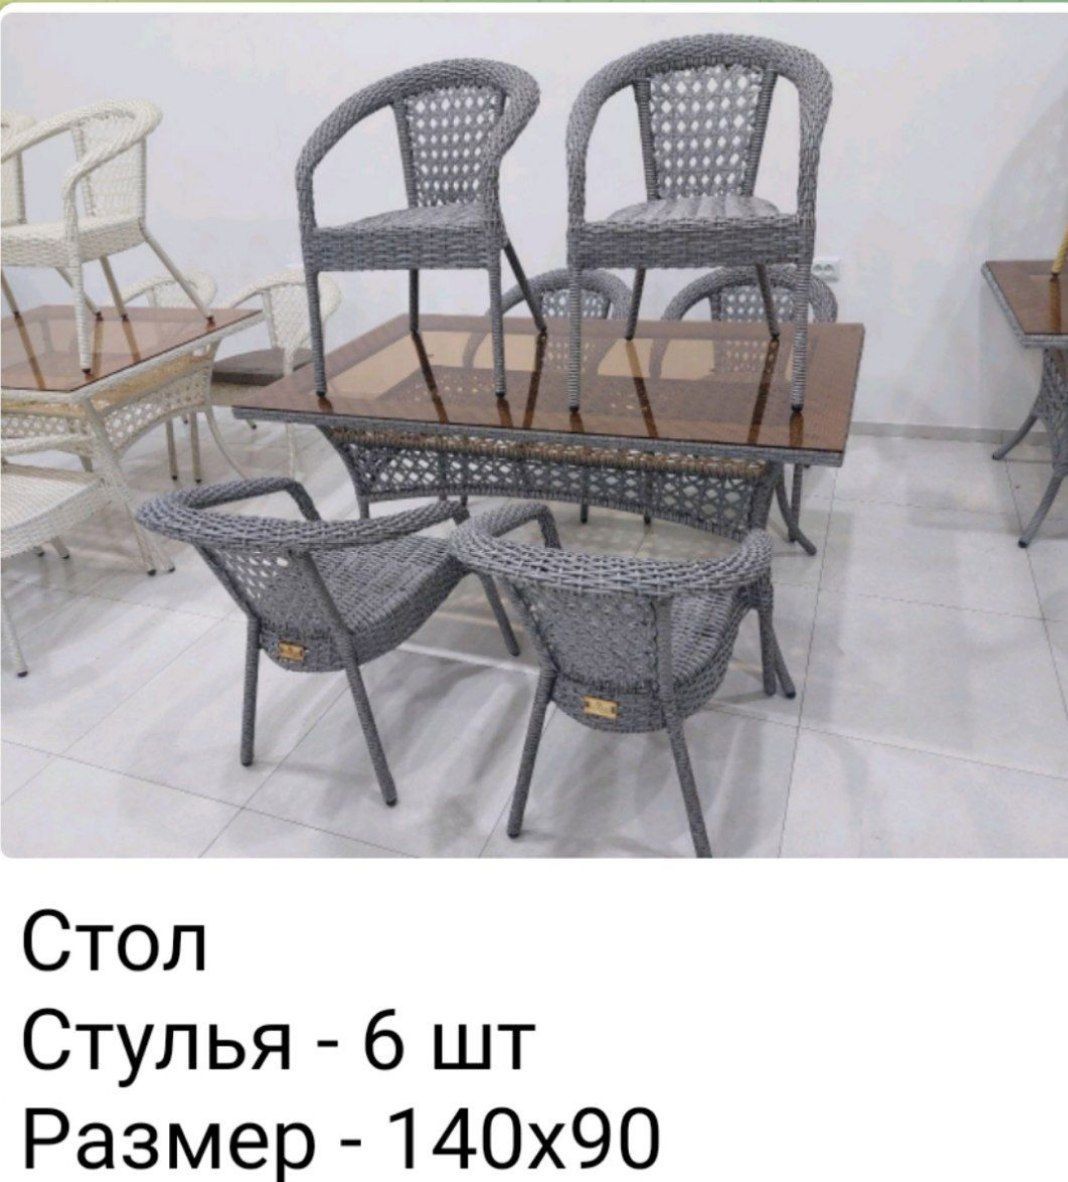 Плетёный стол и стулья. Бесплатная доставка и установка по Ташкенту..